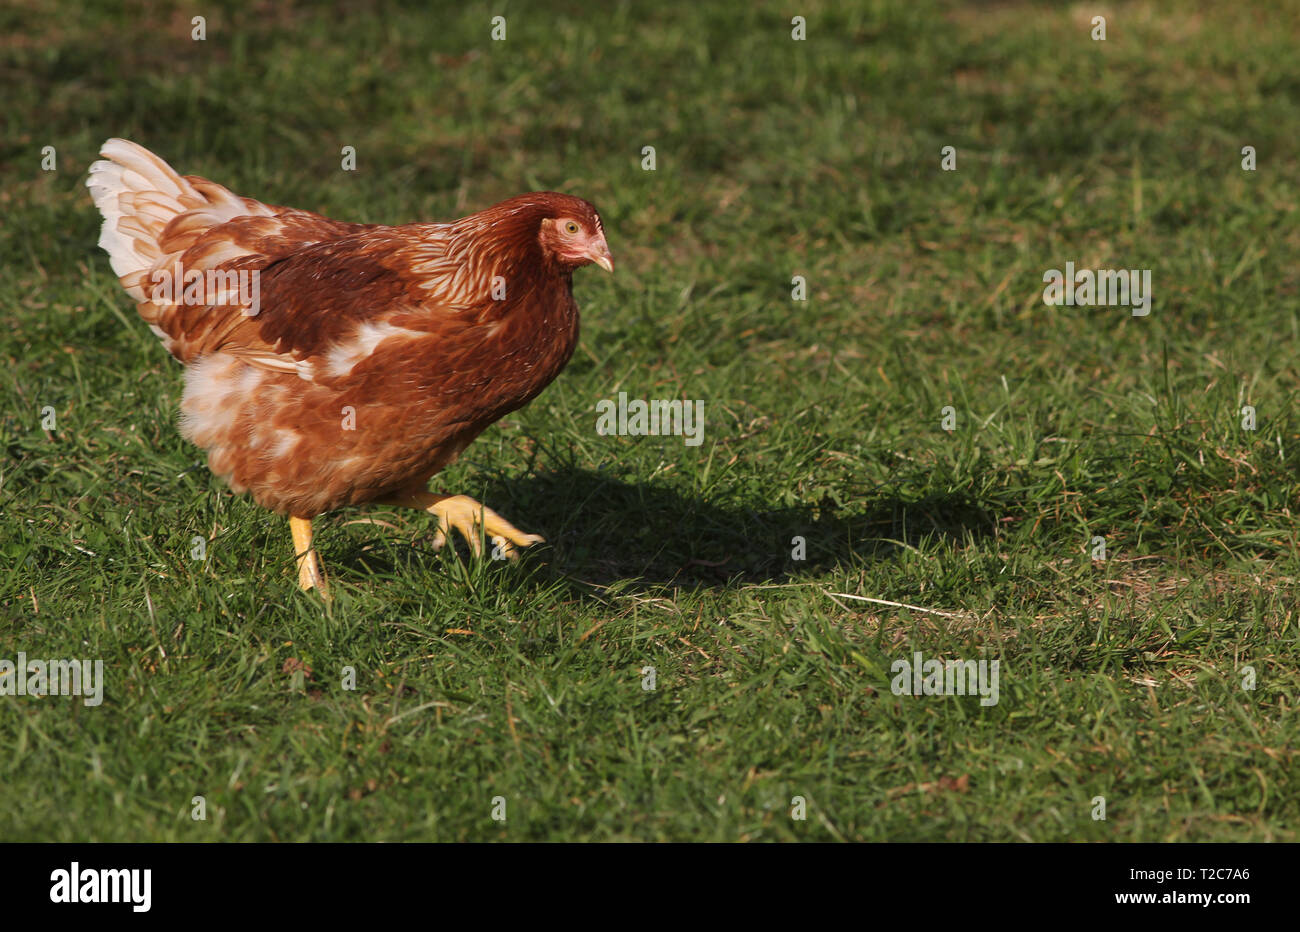 Giovane gallina all'aperto che vive in agricoltura a campo libero. Spostamento da sinistra a destra. Foto Stock